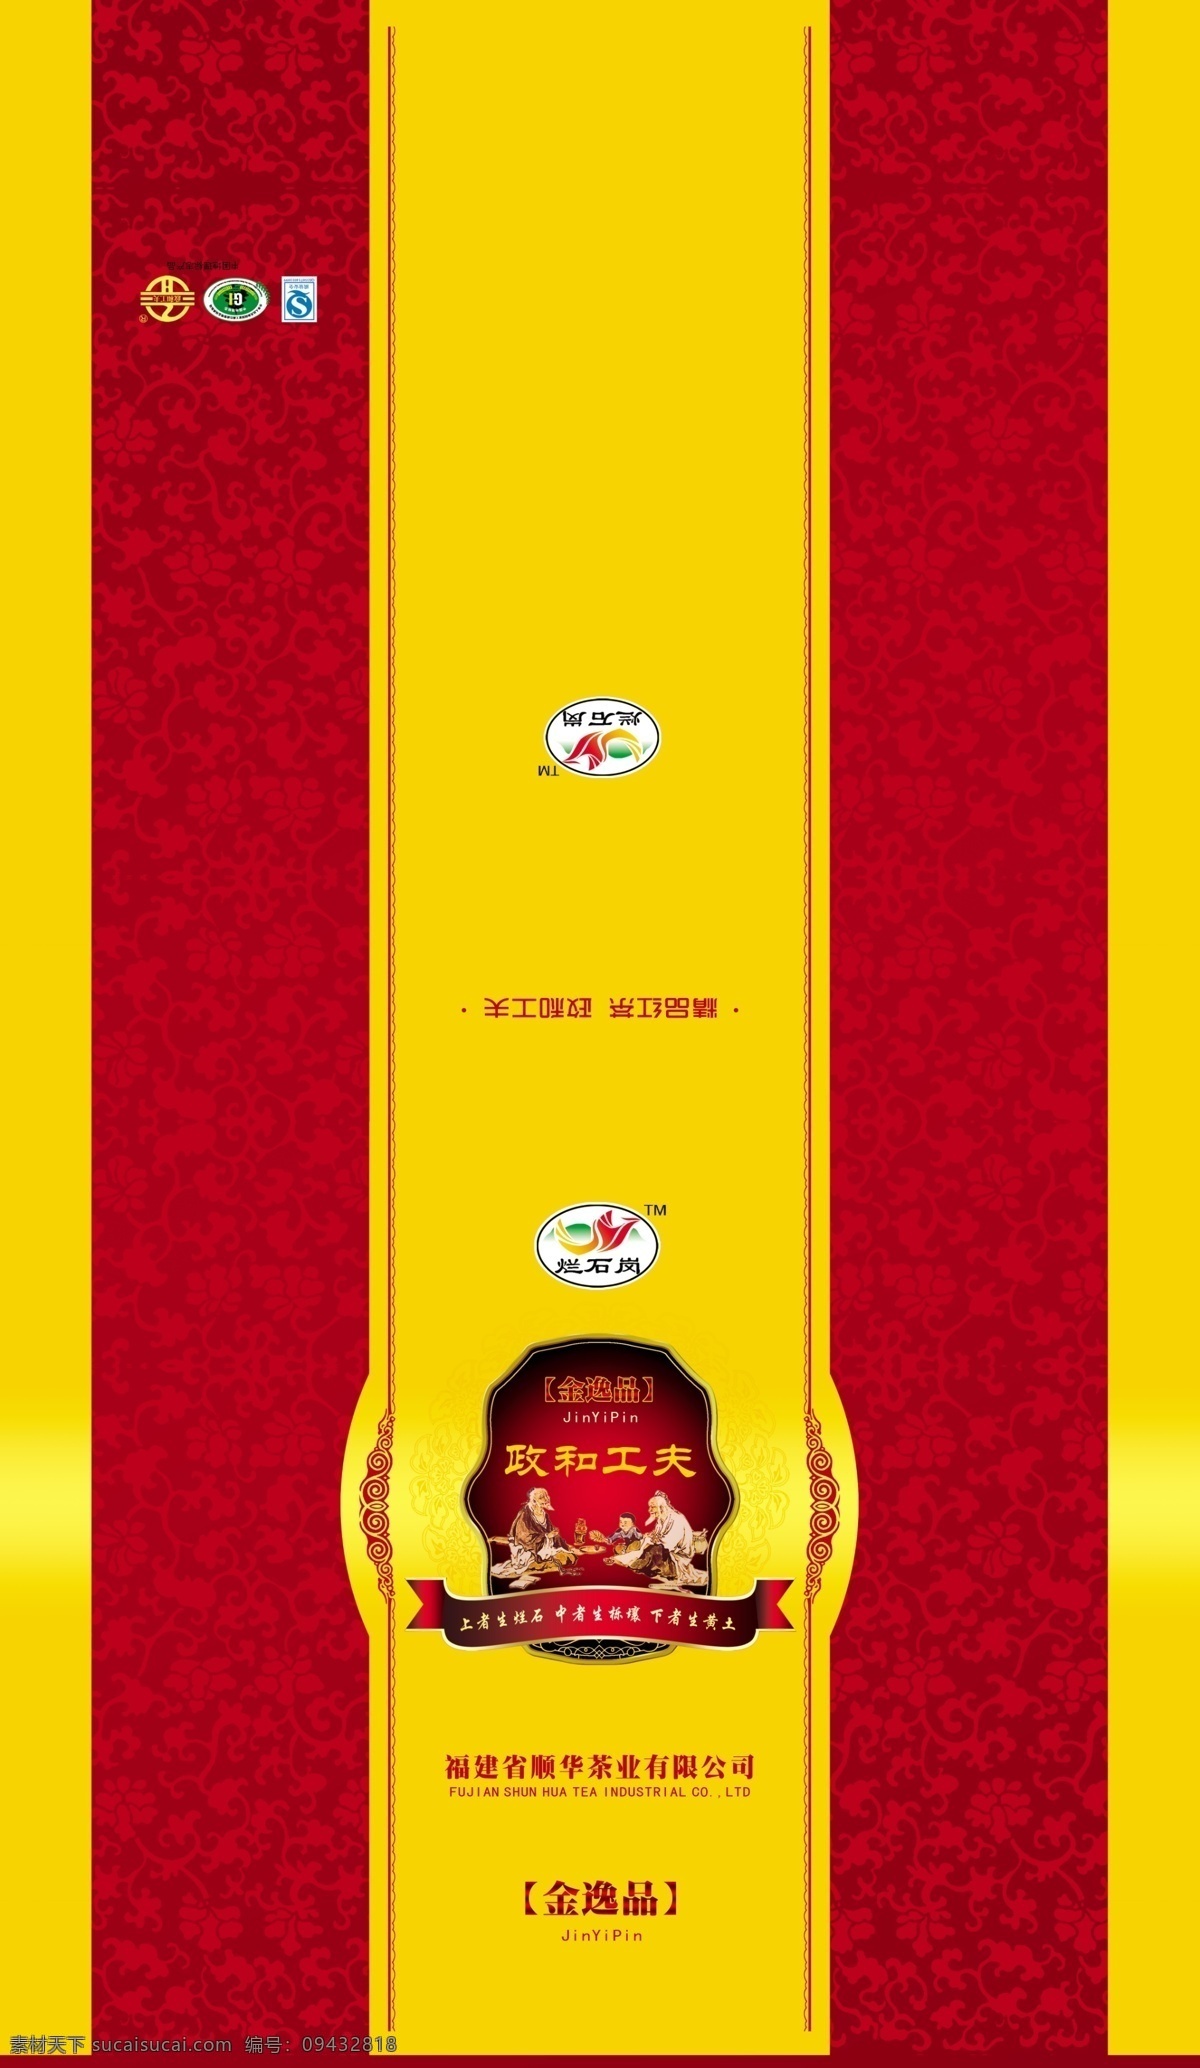 包装盒 产品包装 包装设计 产品包装背景 包装盒设计 金色 红色 产品 广告设计模板 psd素材 黄色